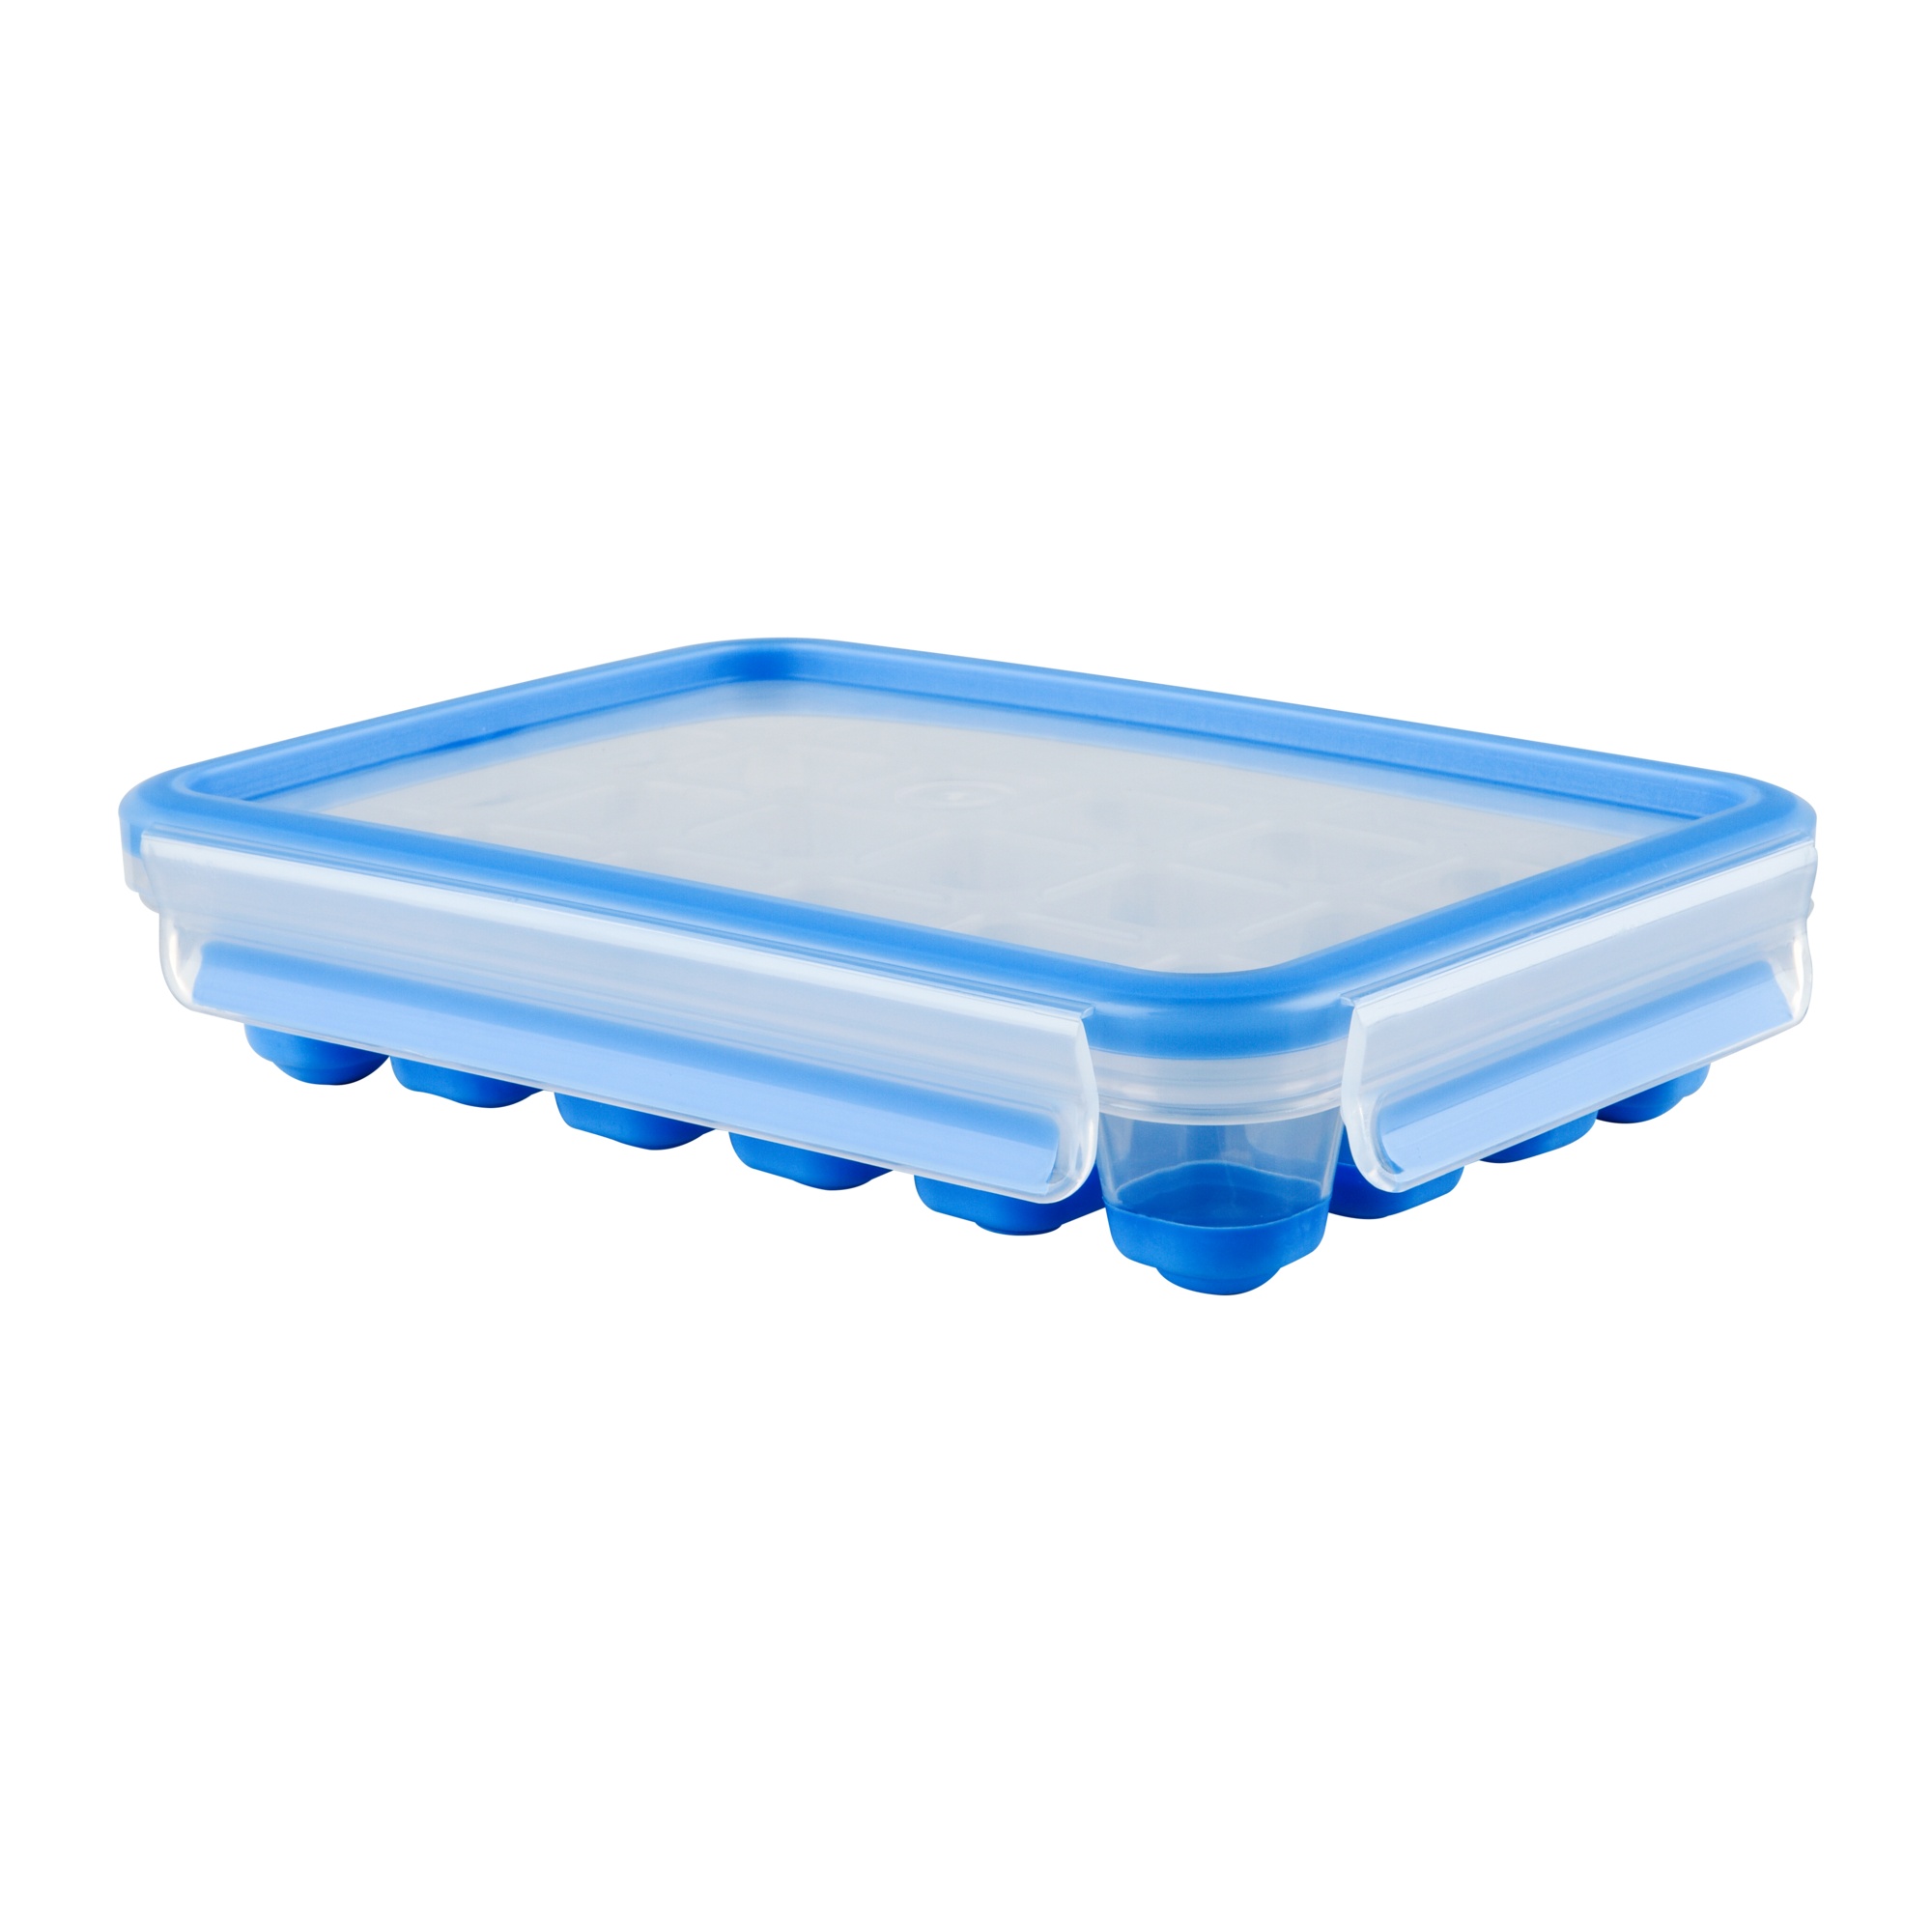 Bild Clip&Close rechteckig Eiswürfelbox Aufbewahrungsbehälter blau (514549)